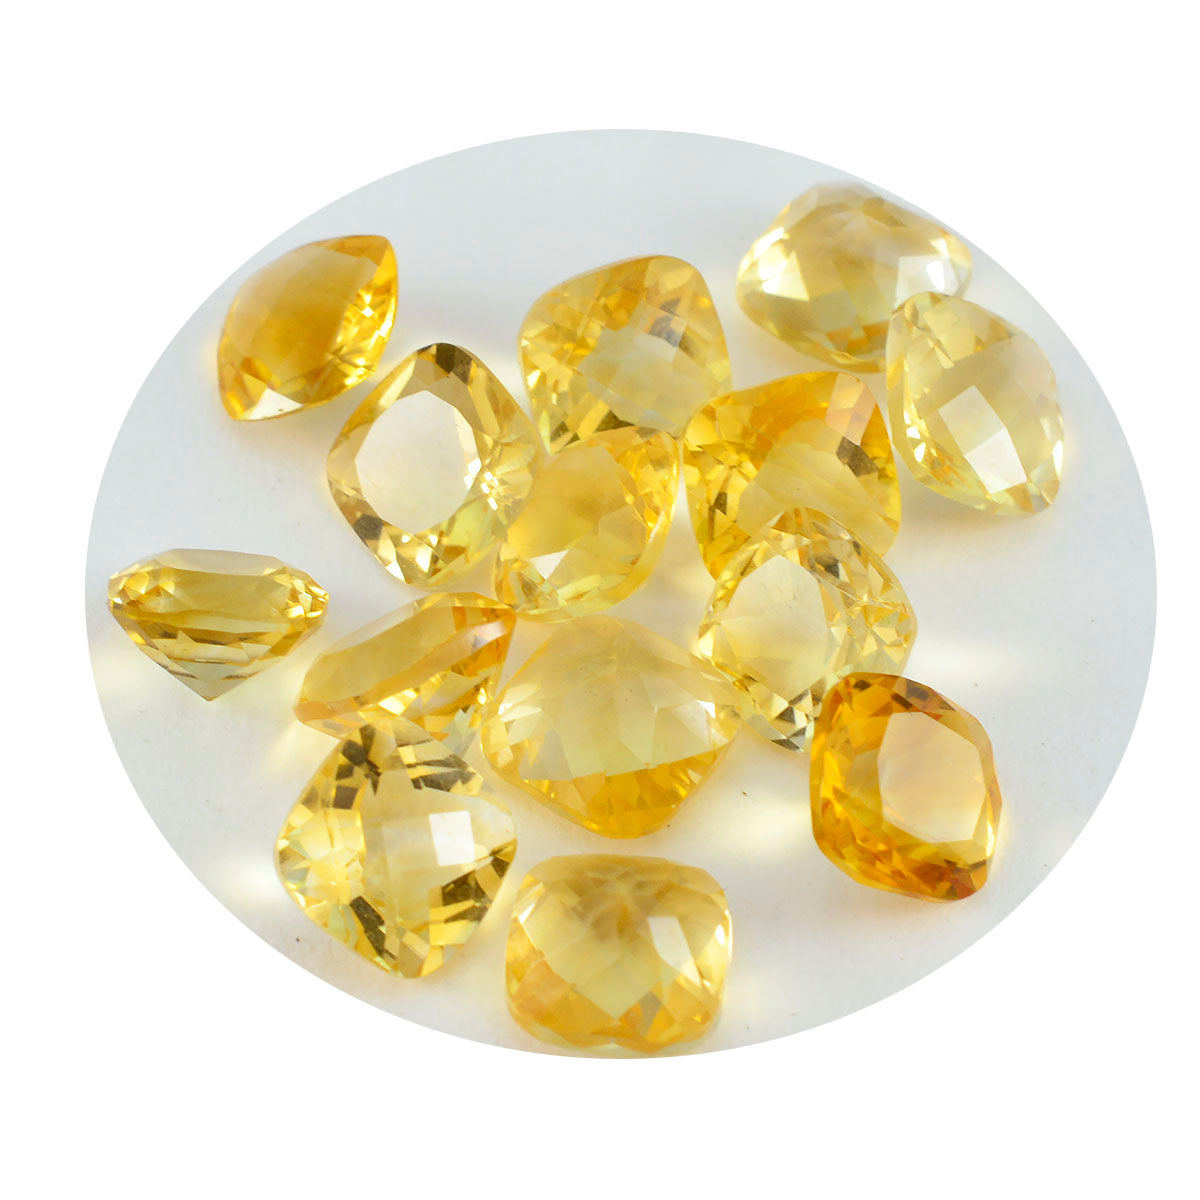 riyogems 1 шт. натуральный желтый цитрин ограненный 8x8 мм в форме подушки + 1 качество, свободный драгоценный камень